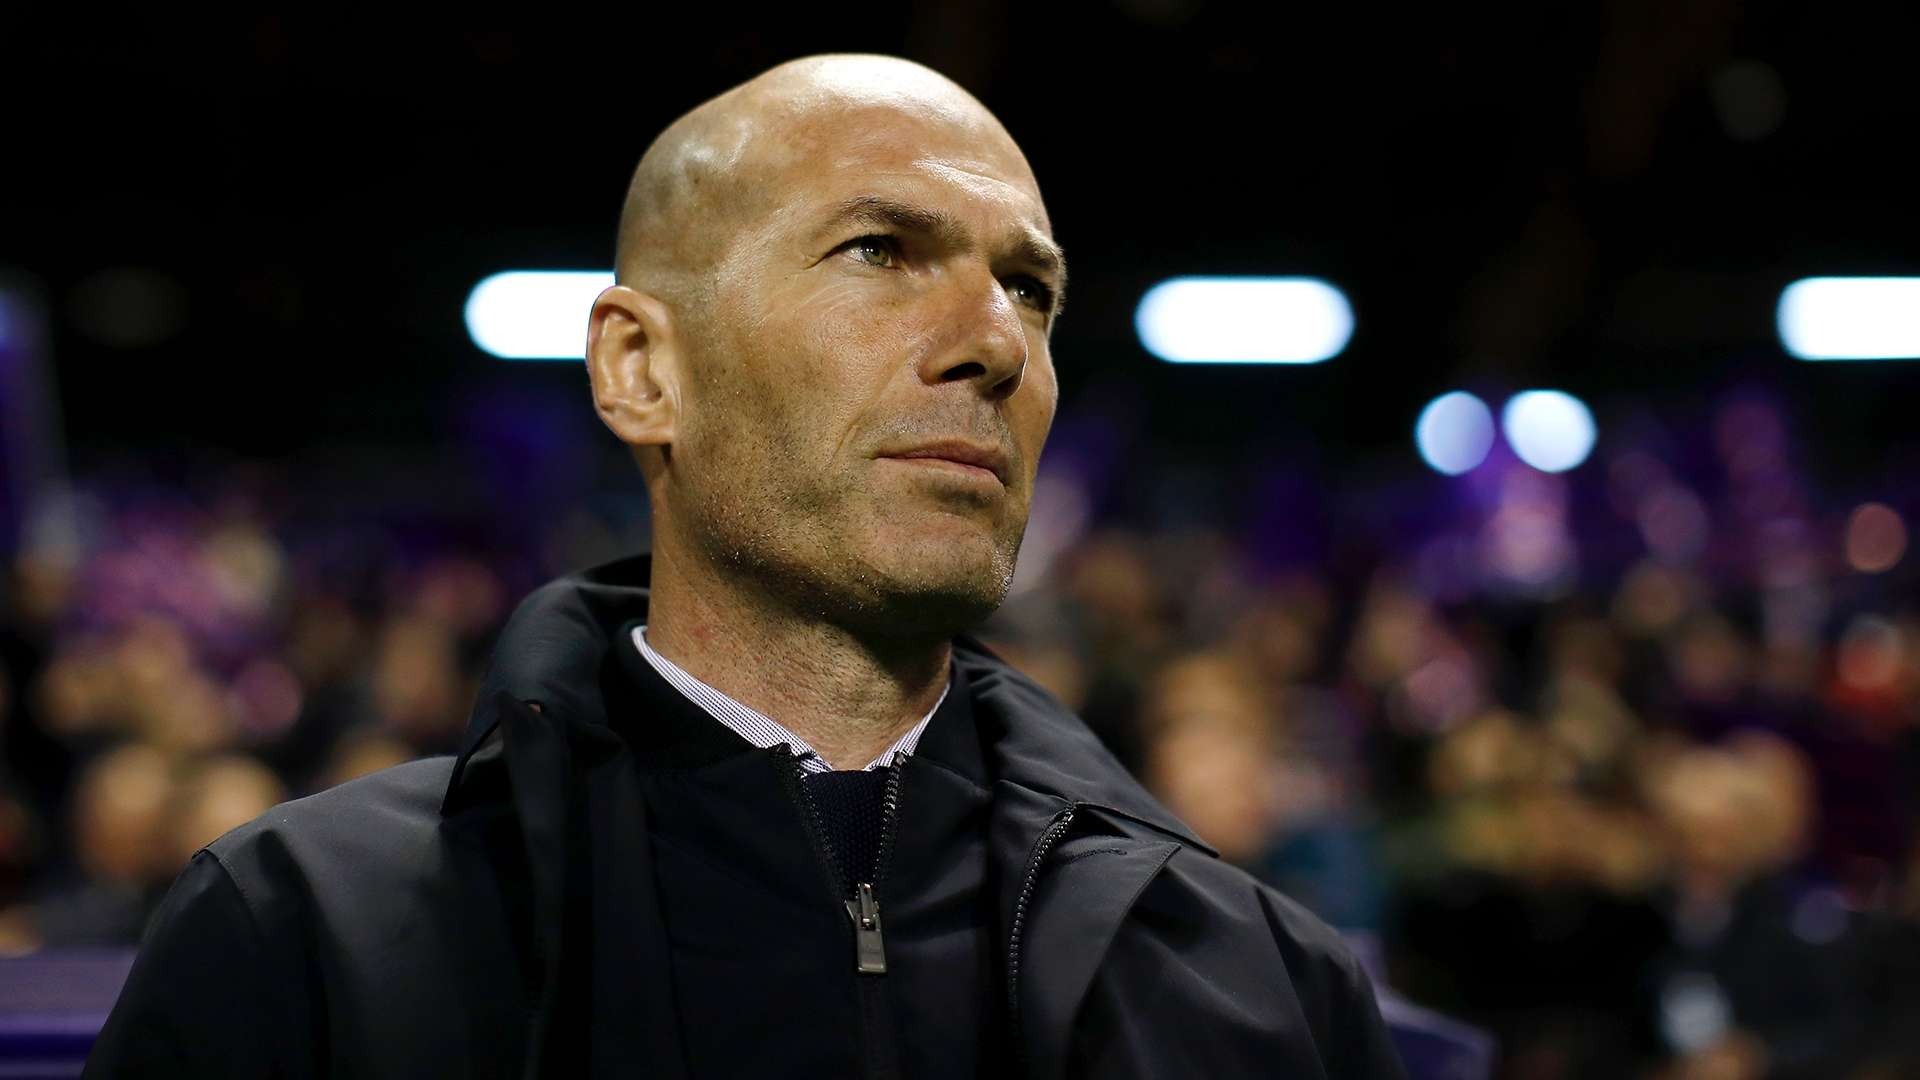 20200308_Zidane